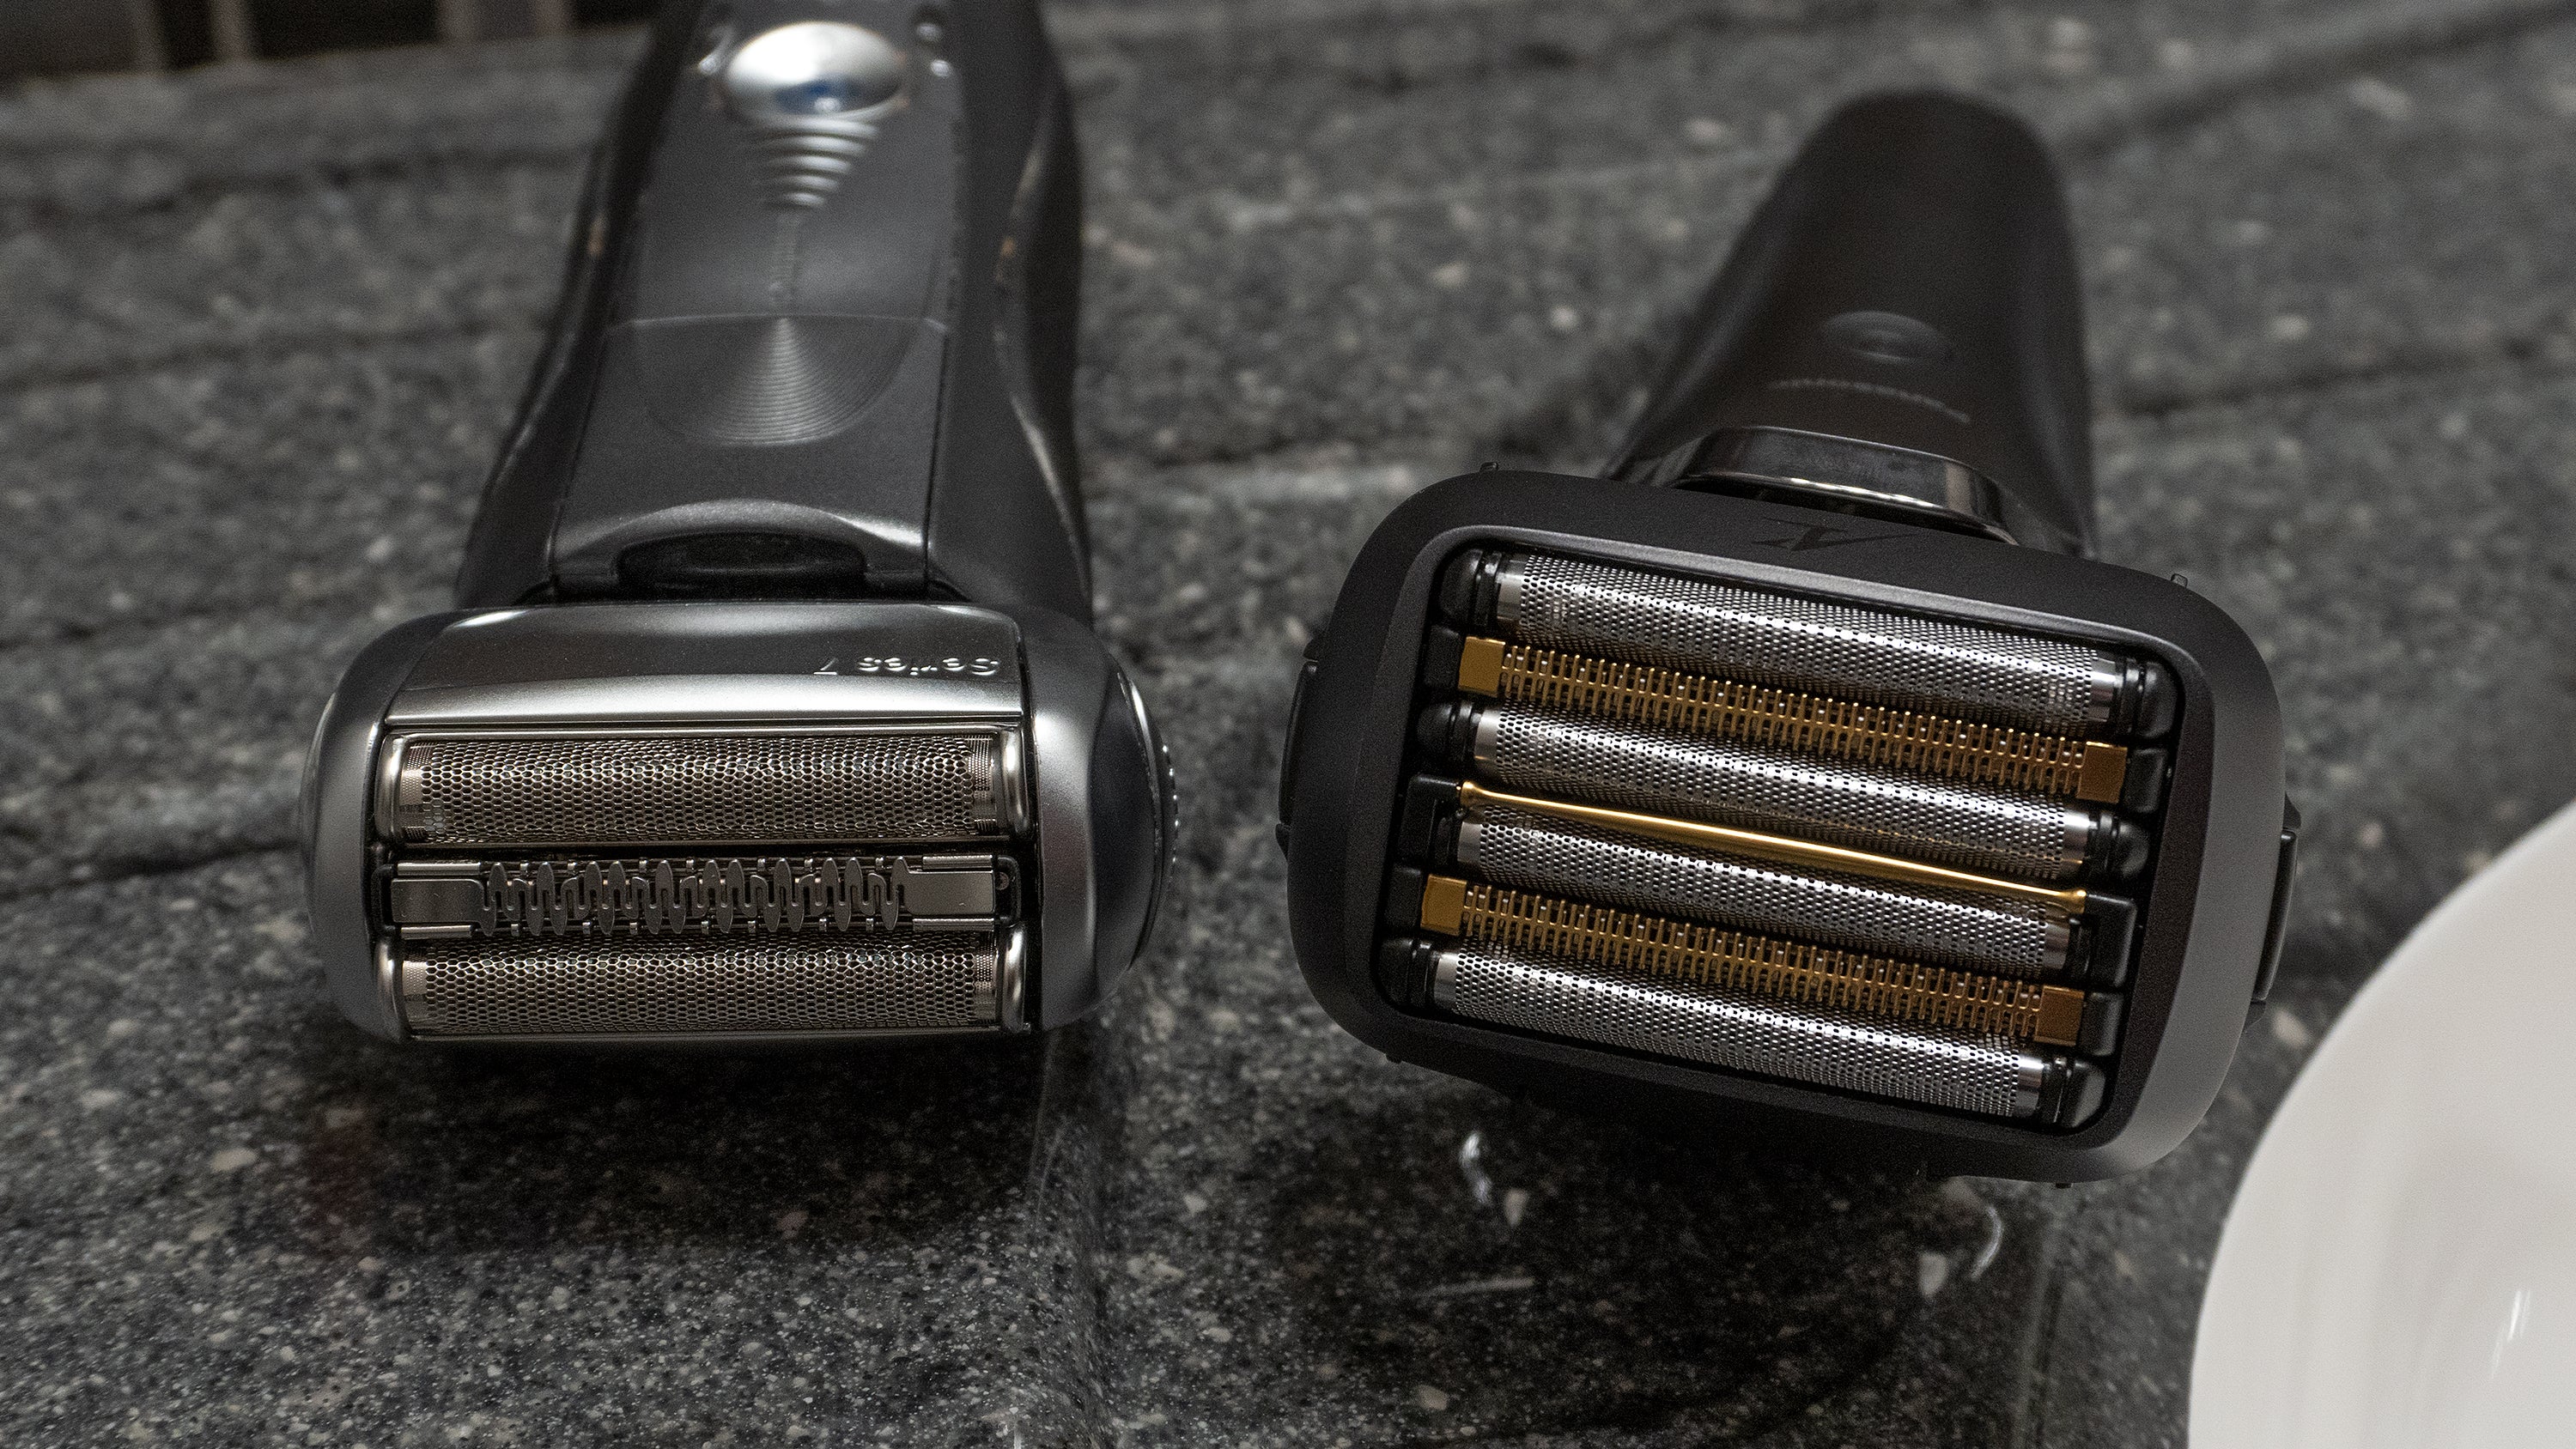 The Panasonic Arc6 razor (right) next to a Braun Series 7 razor (left). (Photo: Andrew Liszewski | Gizmodo)